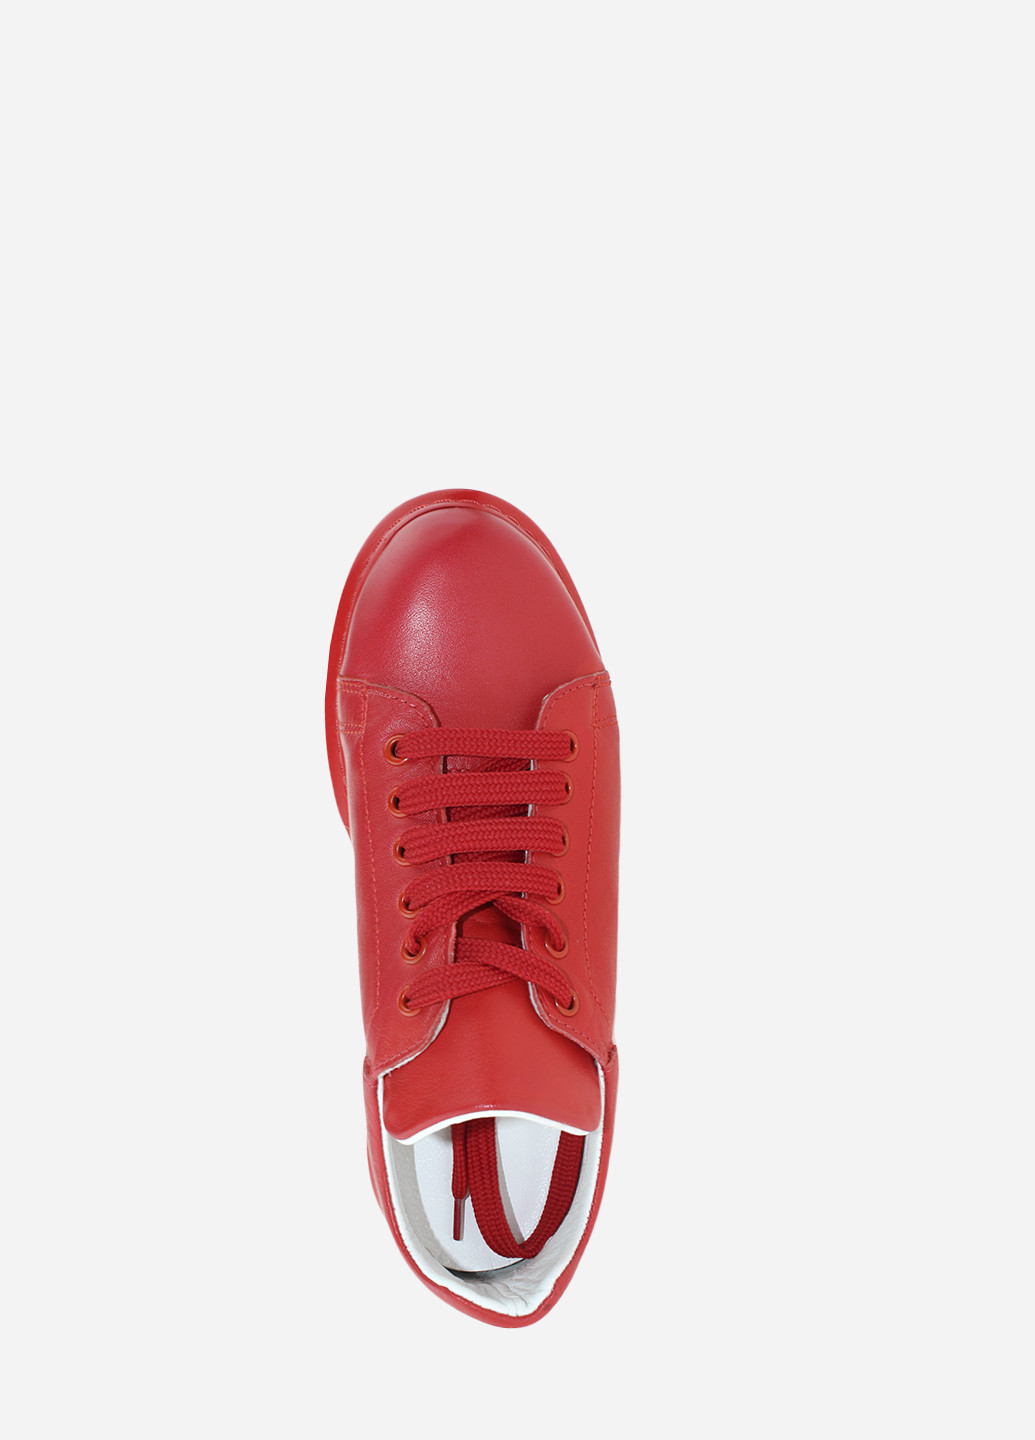 Червоні осінні кросівки re377-920 червоний Evromoda